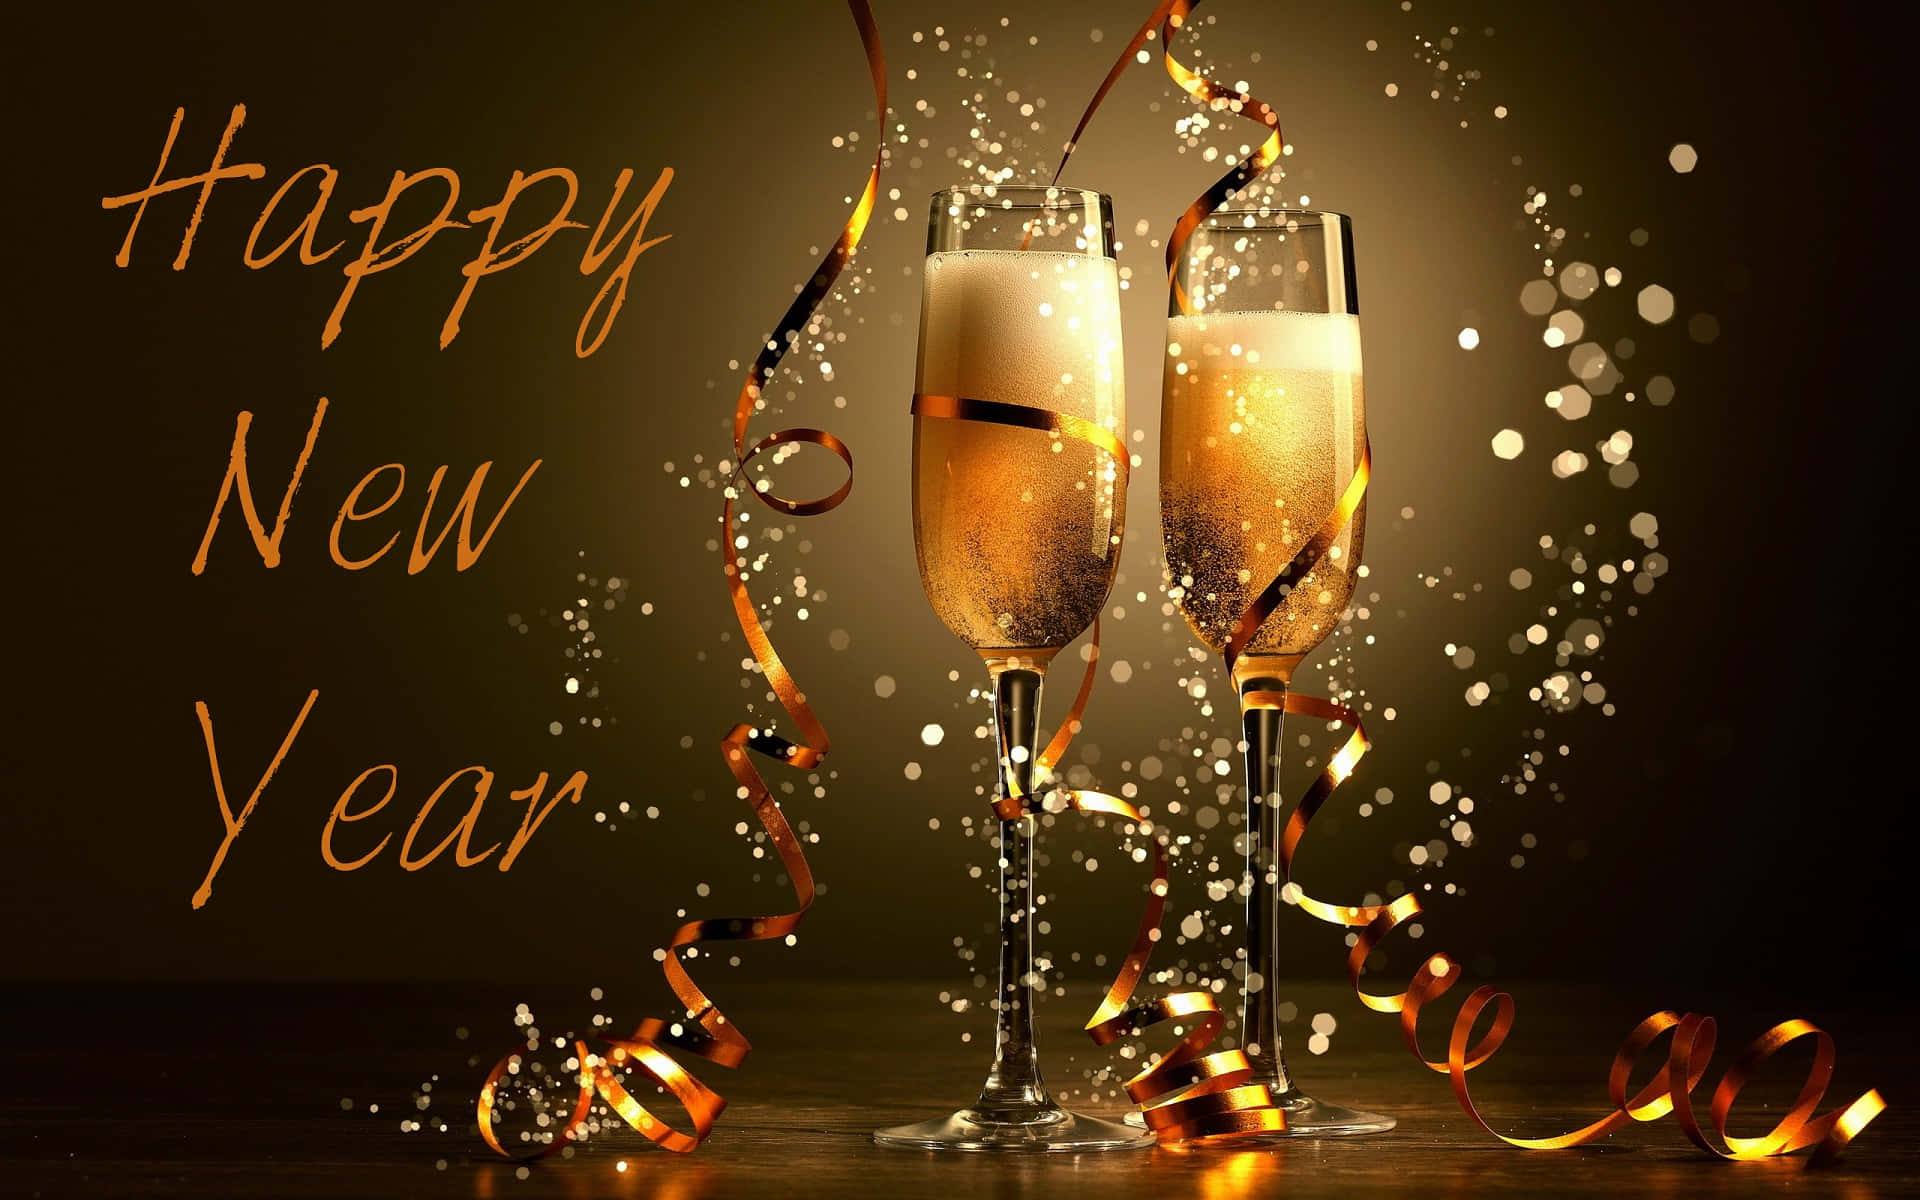 Celebrael Año Nuevo Con Alegría Y Entusiasmo.